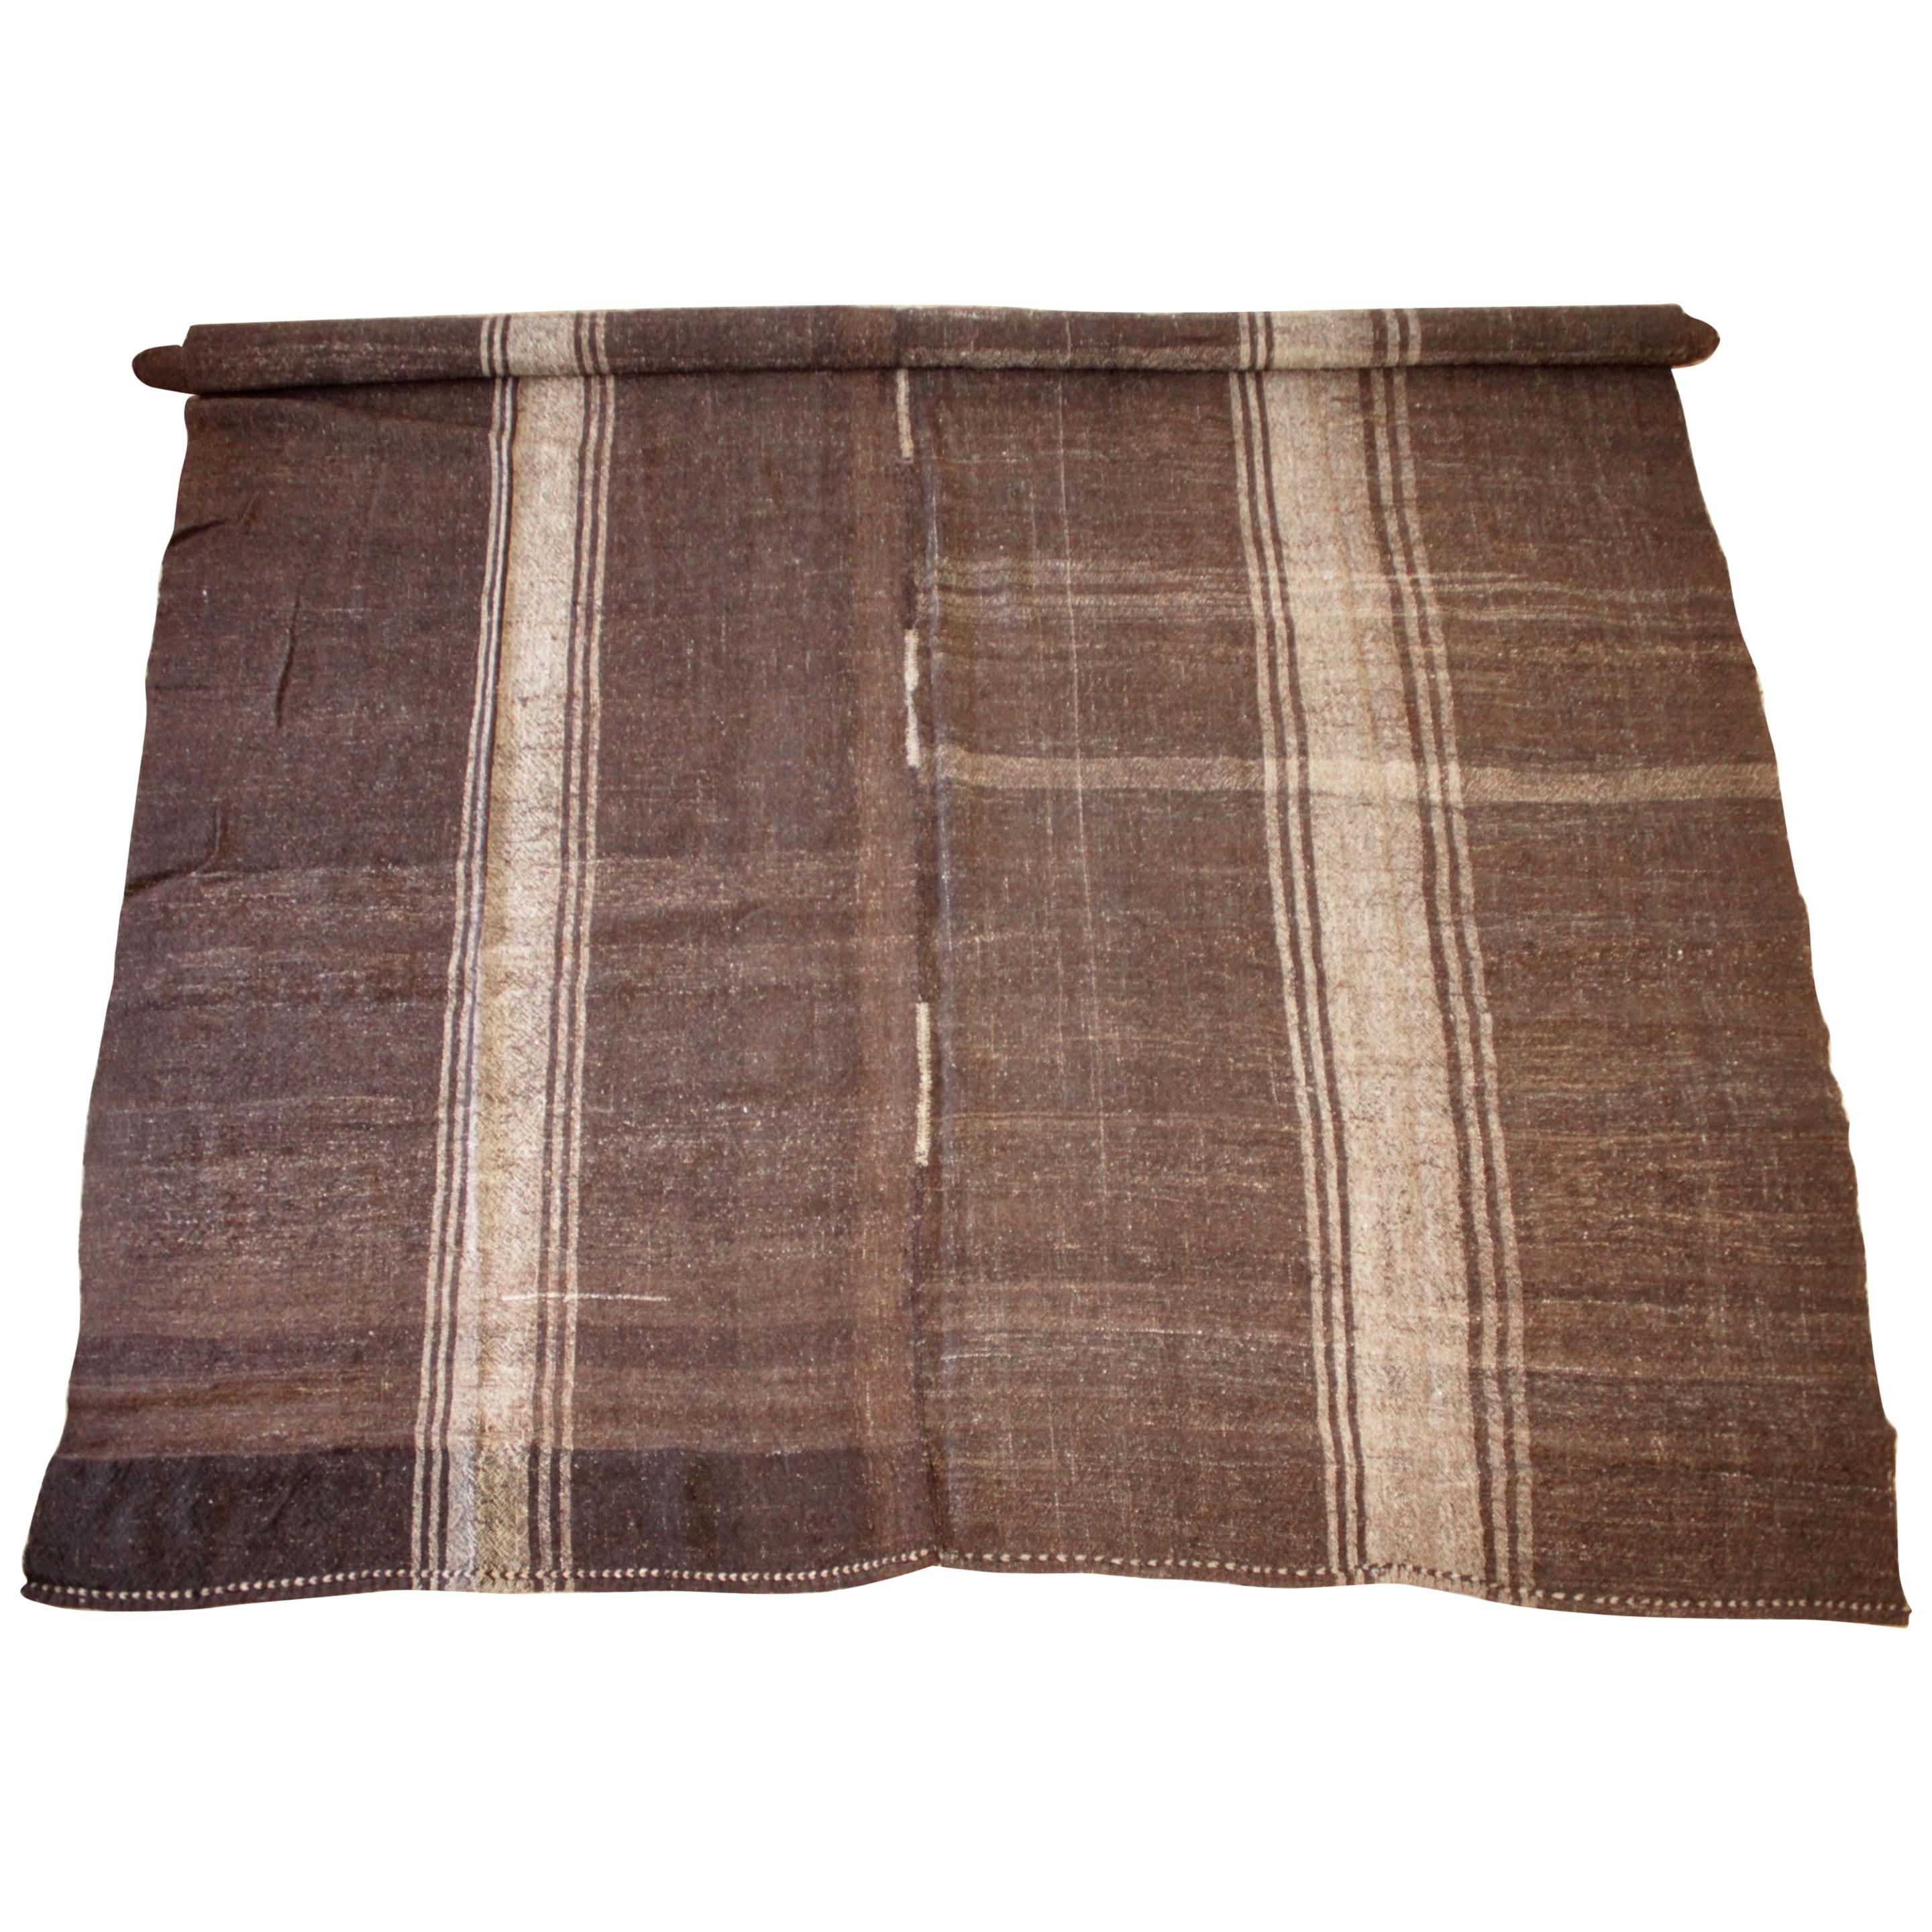 Türkischer Vintage-Teppich in Cocoa-Braun und hellen natürlichen Streifen, doppelseitig im Angebot